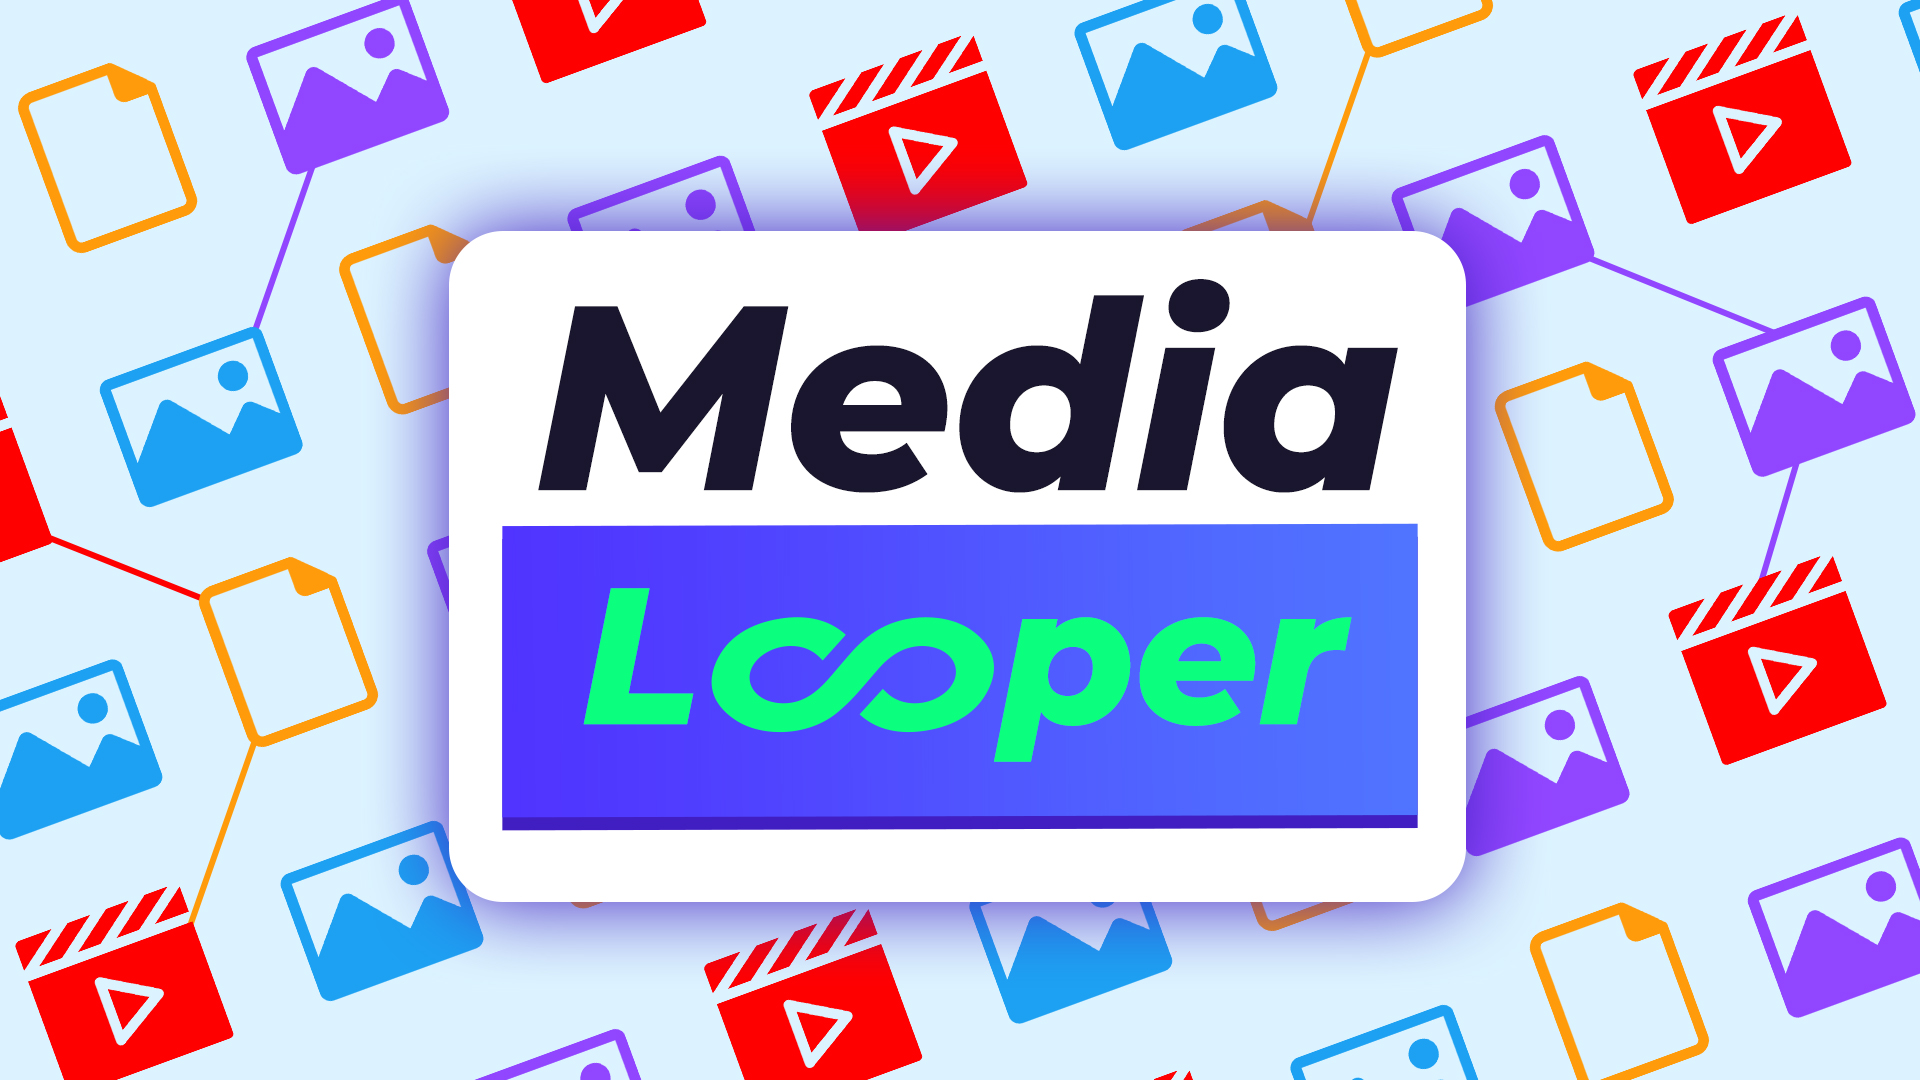 Media Looper - Herramienta gratuita para ev vivostreamers